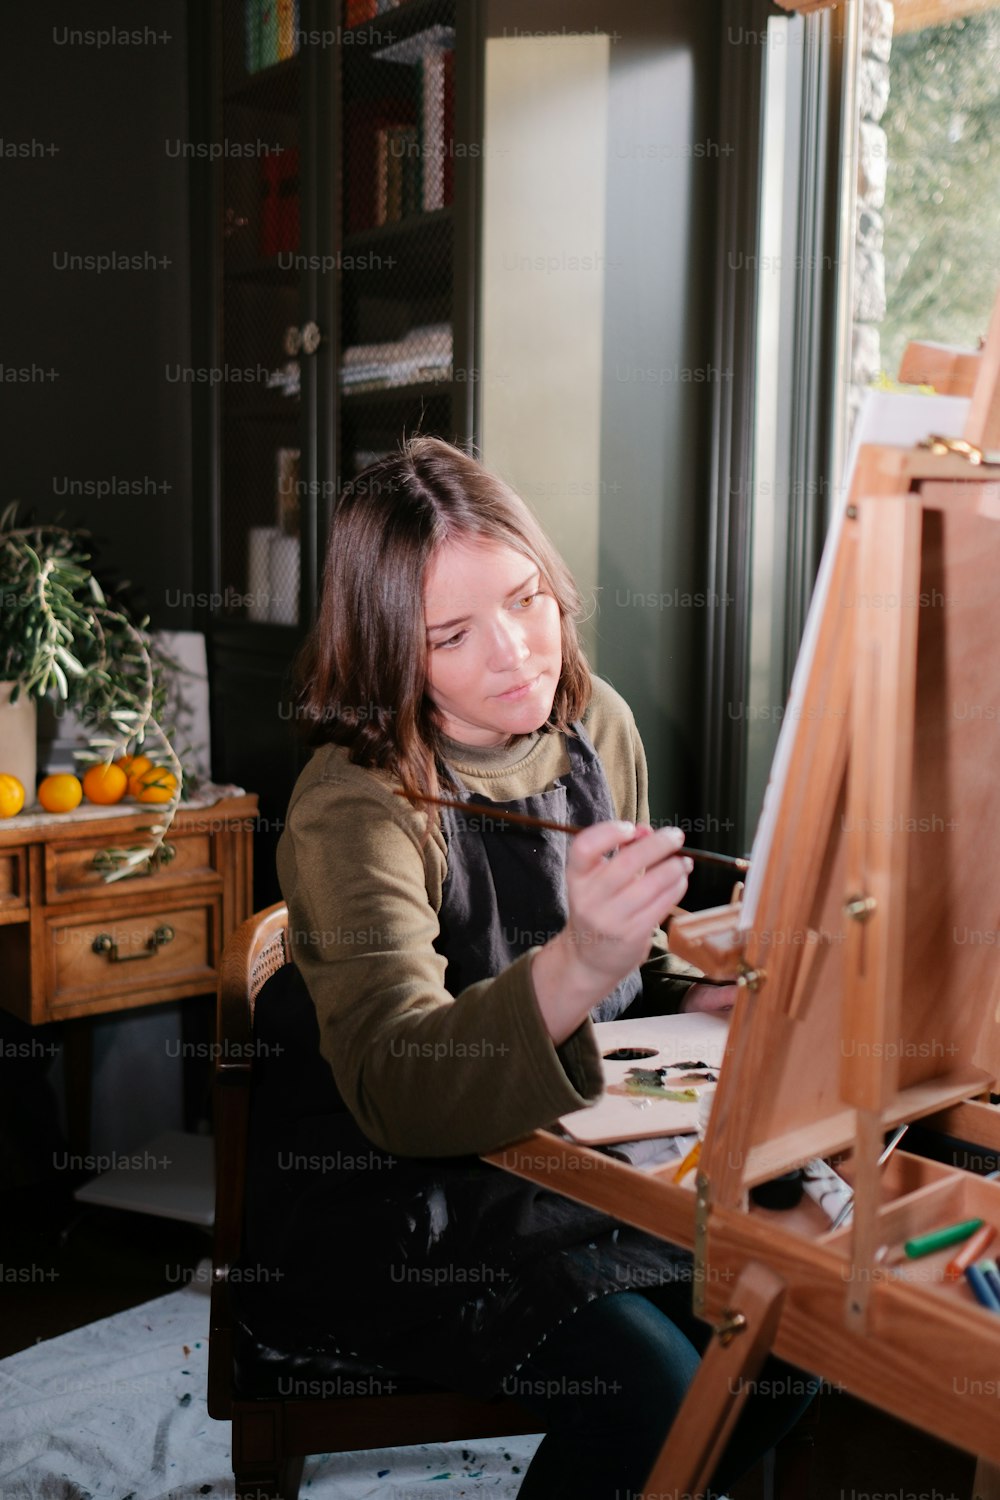 Una donna seduta davanti a un dipinto da cavalletto